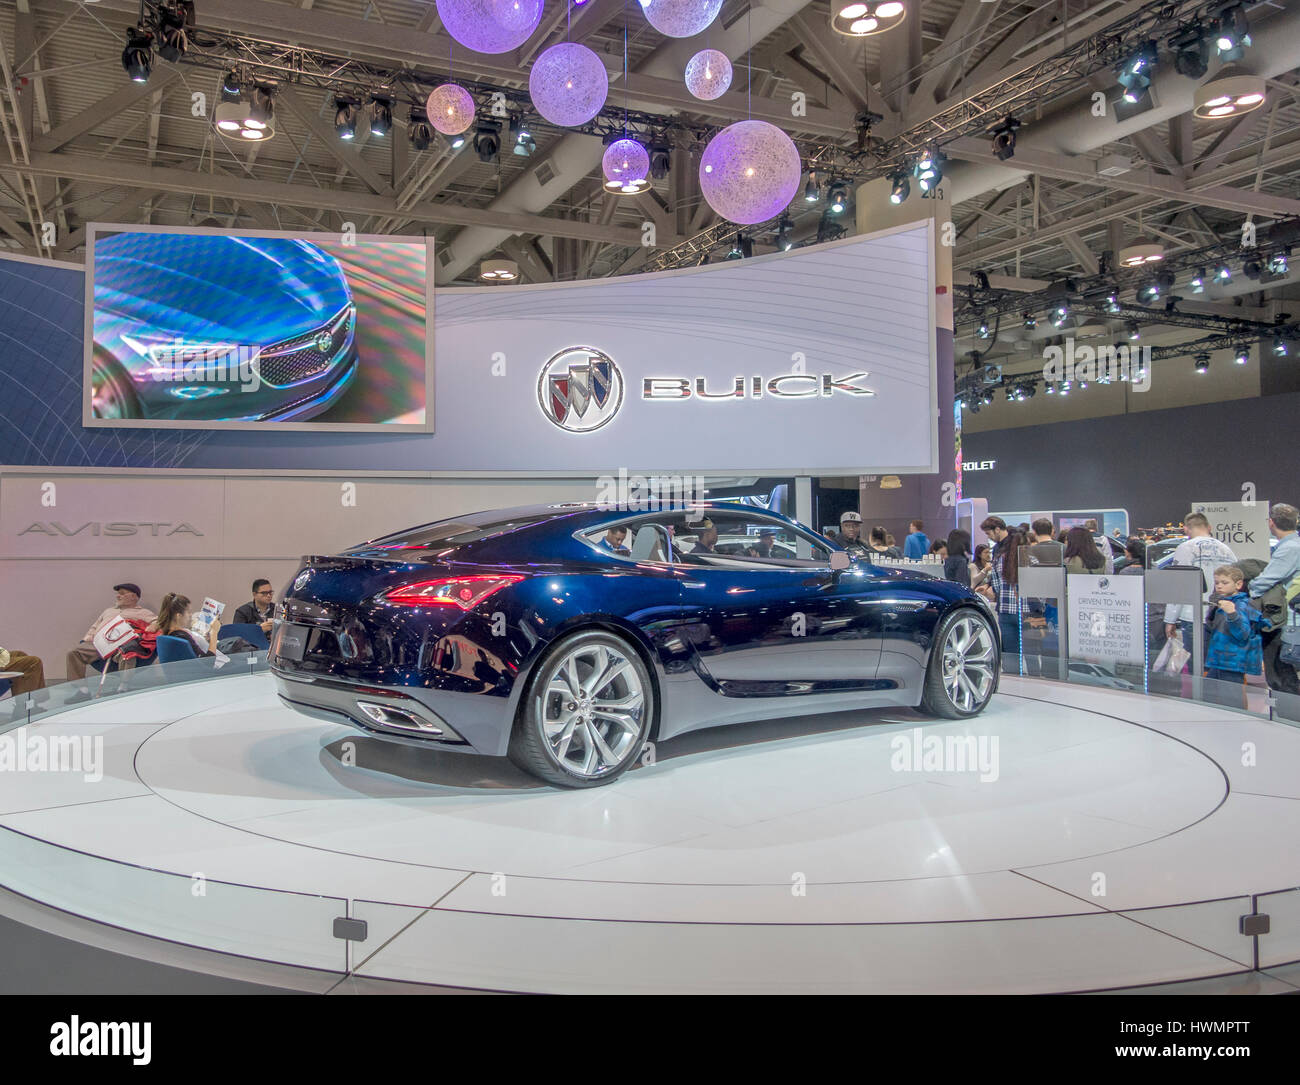 Der Buick Konzept Auto Avista auf dem Display an der kanadischen 2017 Auto Show Held In Toronto, 17-26 Februar 2017. Stockfoto